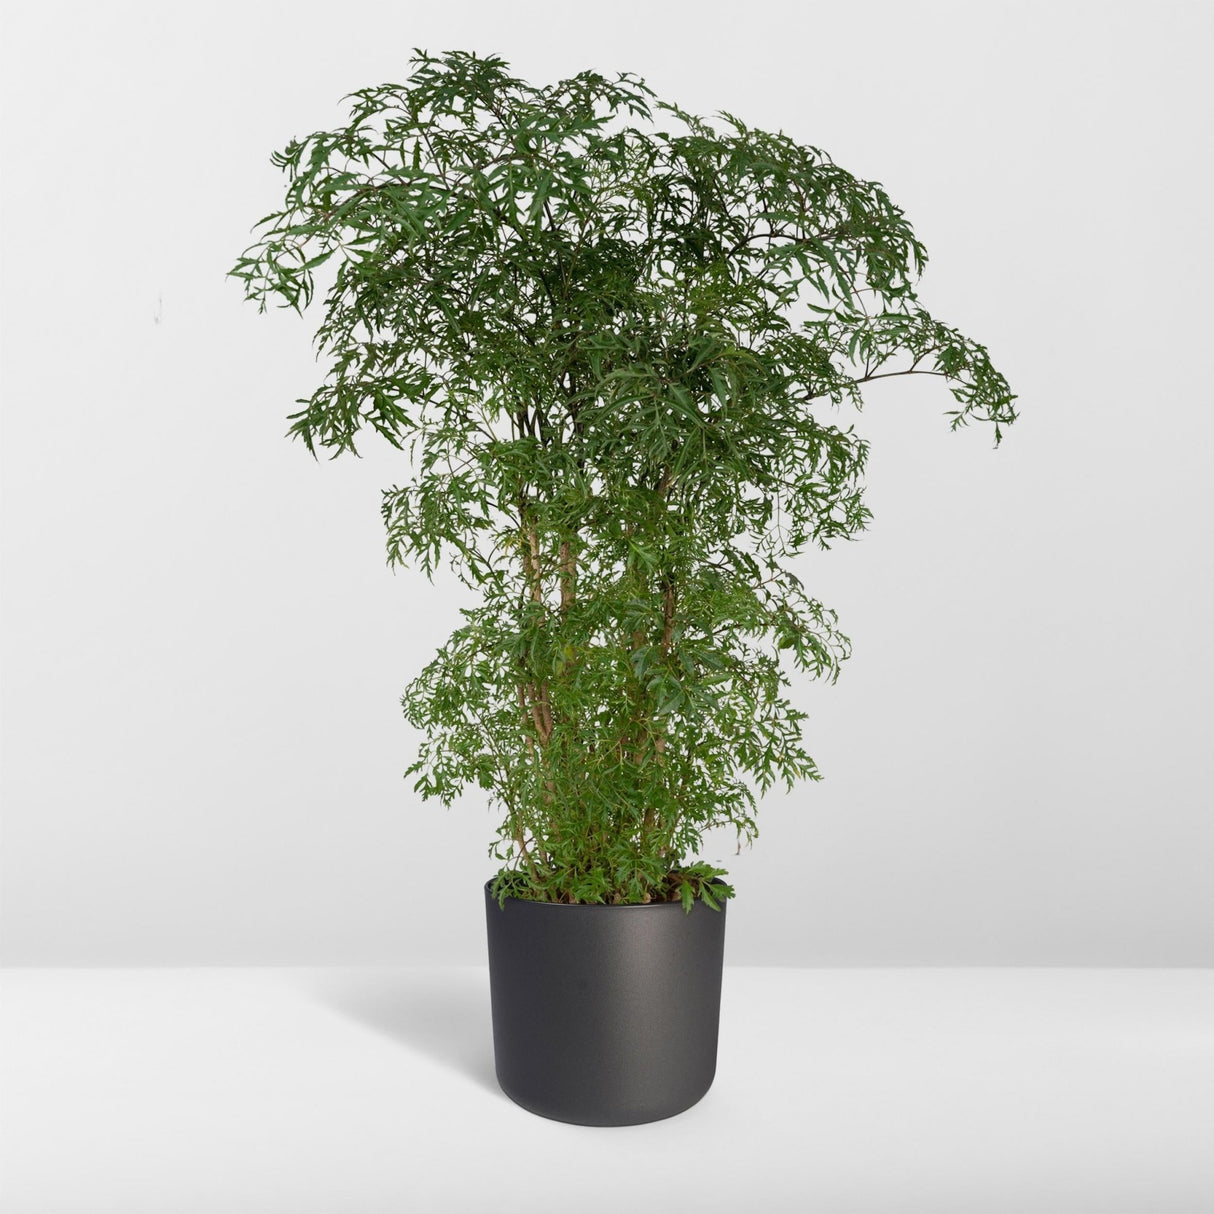 Livraison plante - Polyscias Fruticosa - h75cm, Ø21cm - grande plante d'intérieur